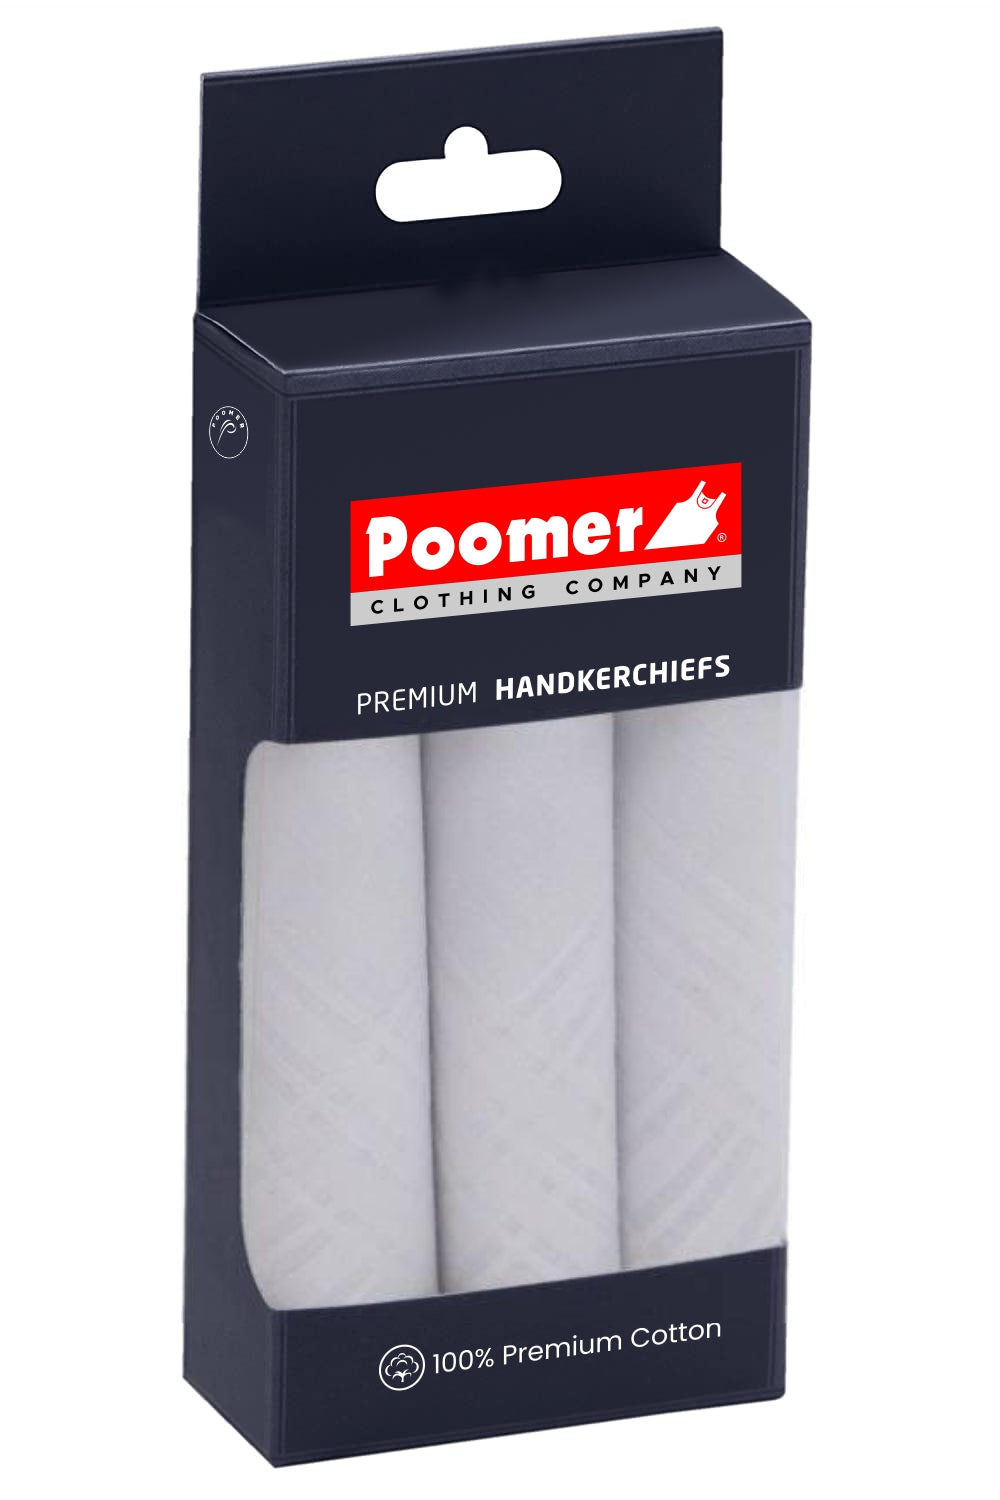 Poomer Handkerchief Premium - Fresh White